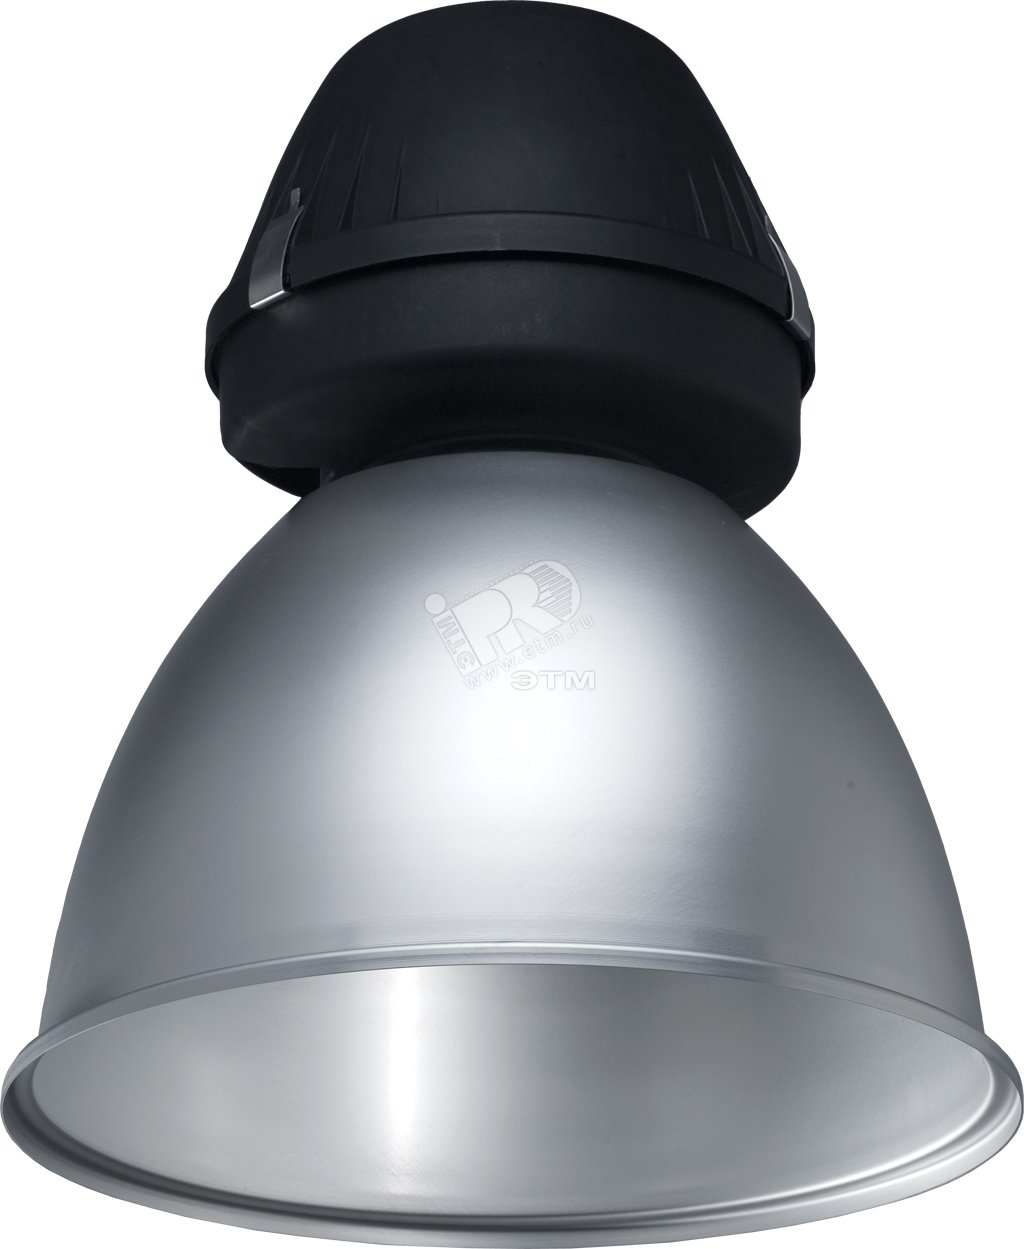 Светильник HBA 250 M, ip65 (комплект) металлик 1311000270 Световые Технологии